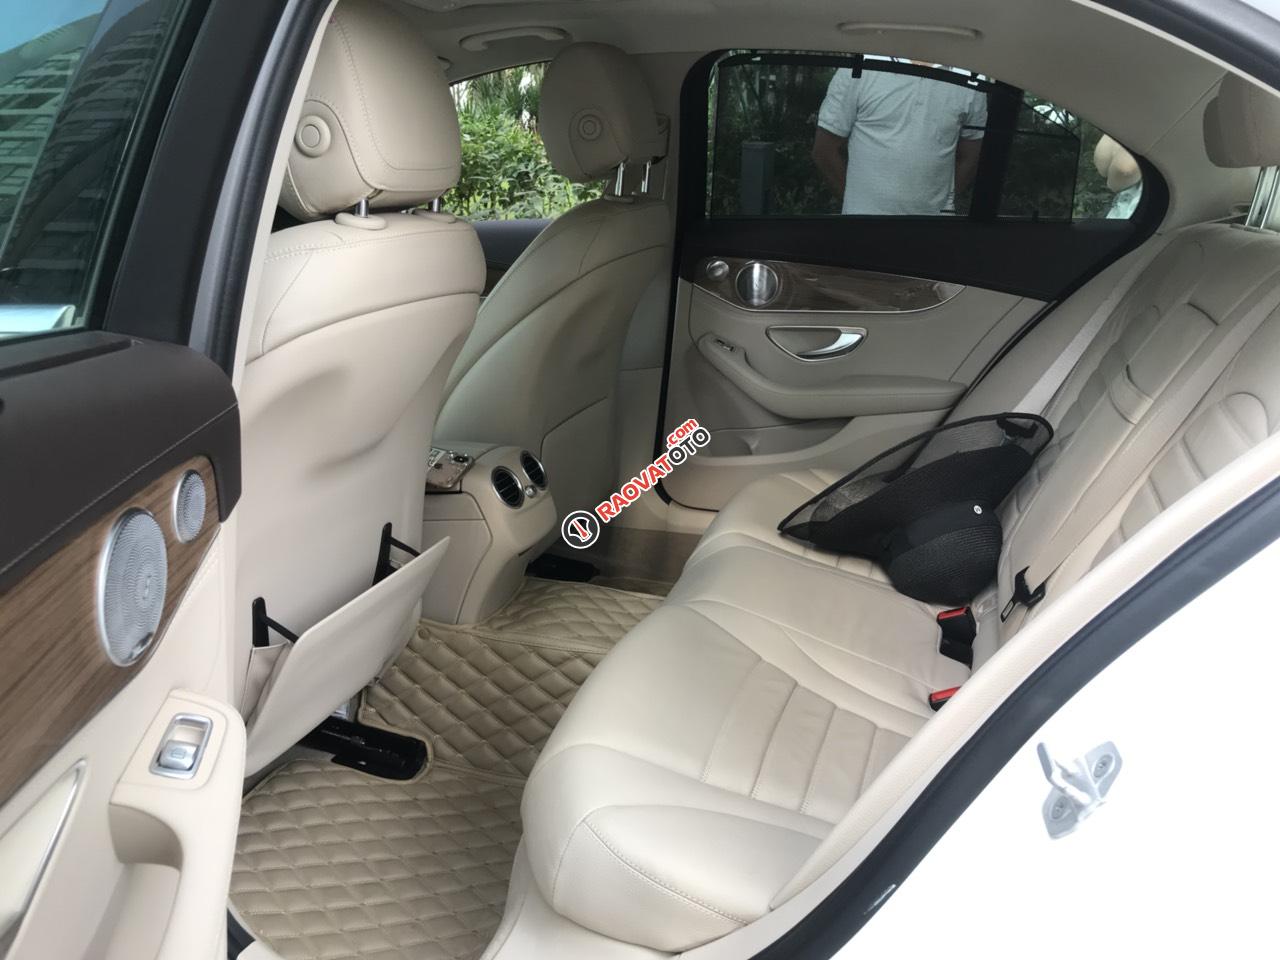 Chính chủ bán Mercedes C250 Exclusive model 2017, màu trắng, nội thất kem, siêu hot, giá 1tỷ 280 triệu-2